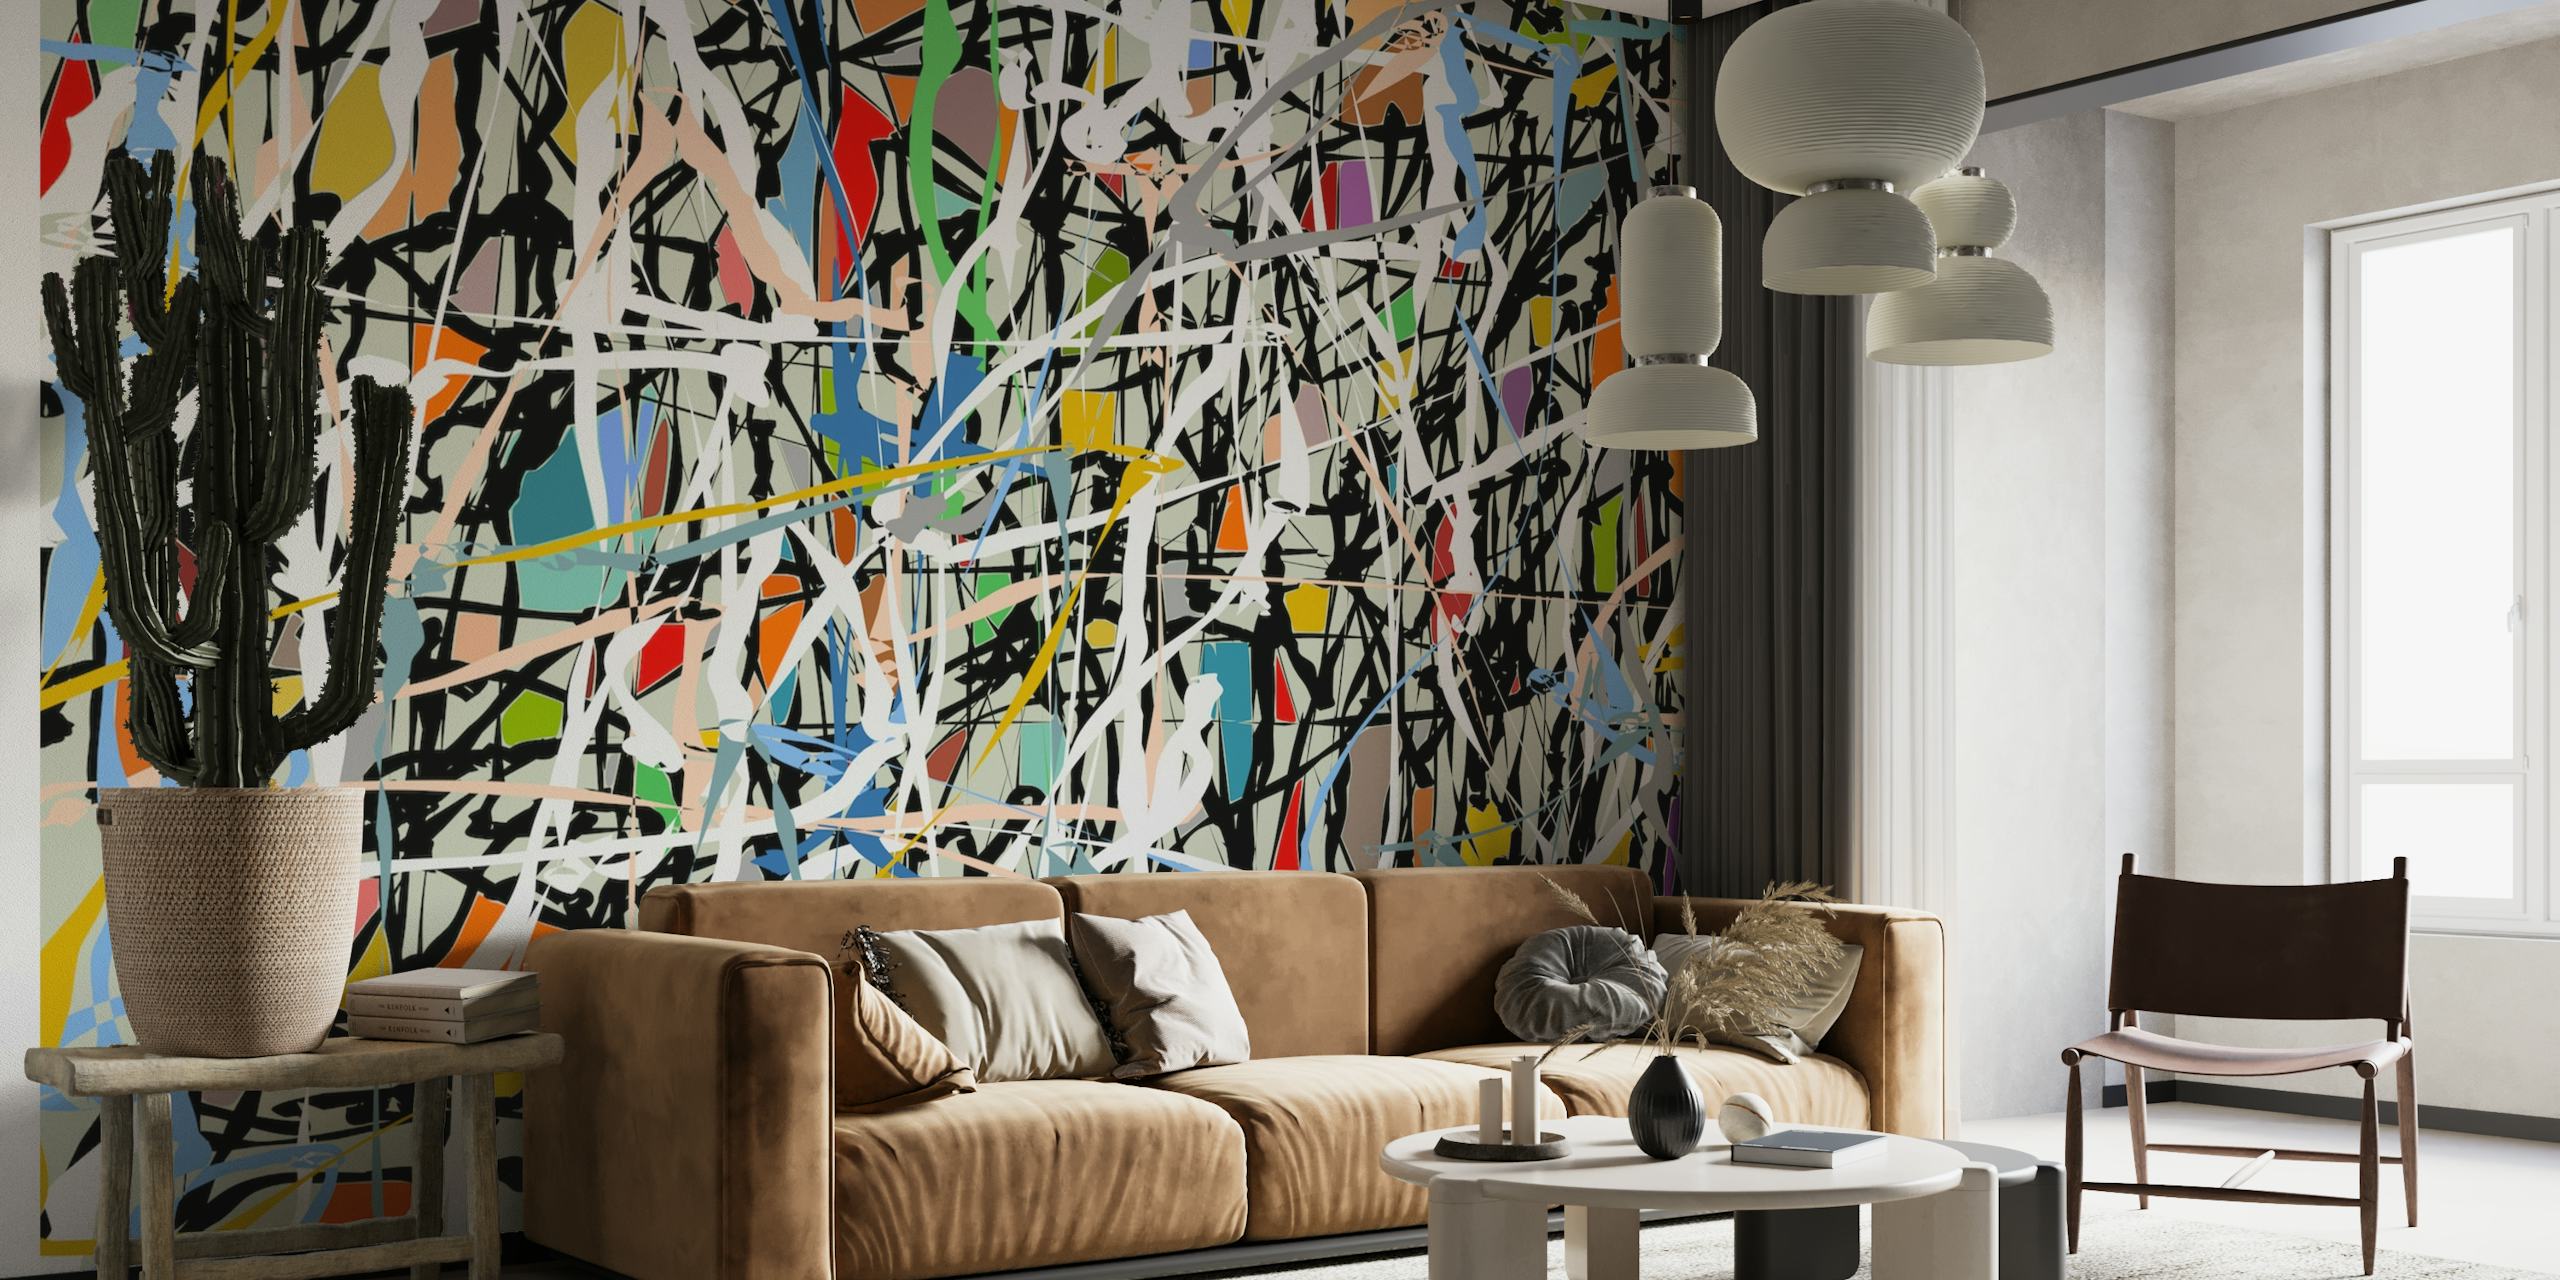 Wandbild im abstrakten expressionistischen Stil mit lebendigen Spritzern und kräftigen Strichen, ähnlich wie bei Pollocks Kunstwerken